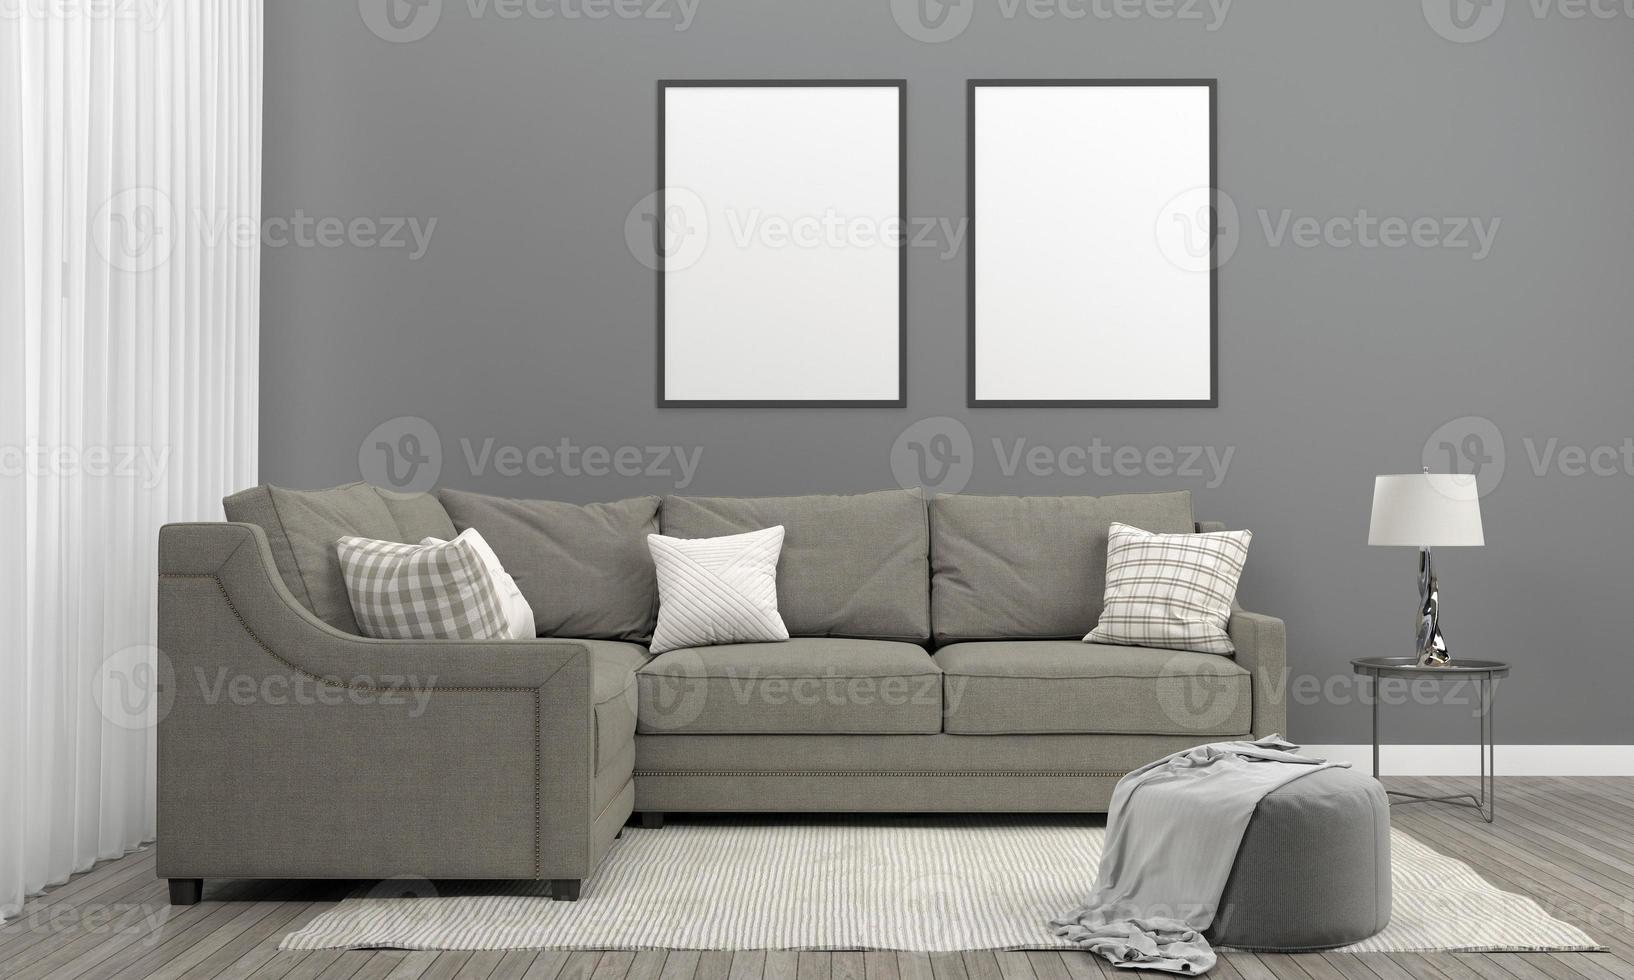 3d rindió el marco de la sala de estar moderna interior con sofá - sofá y mesa foto